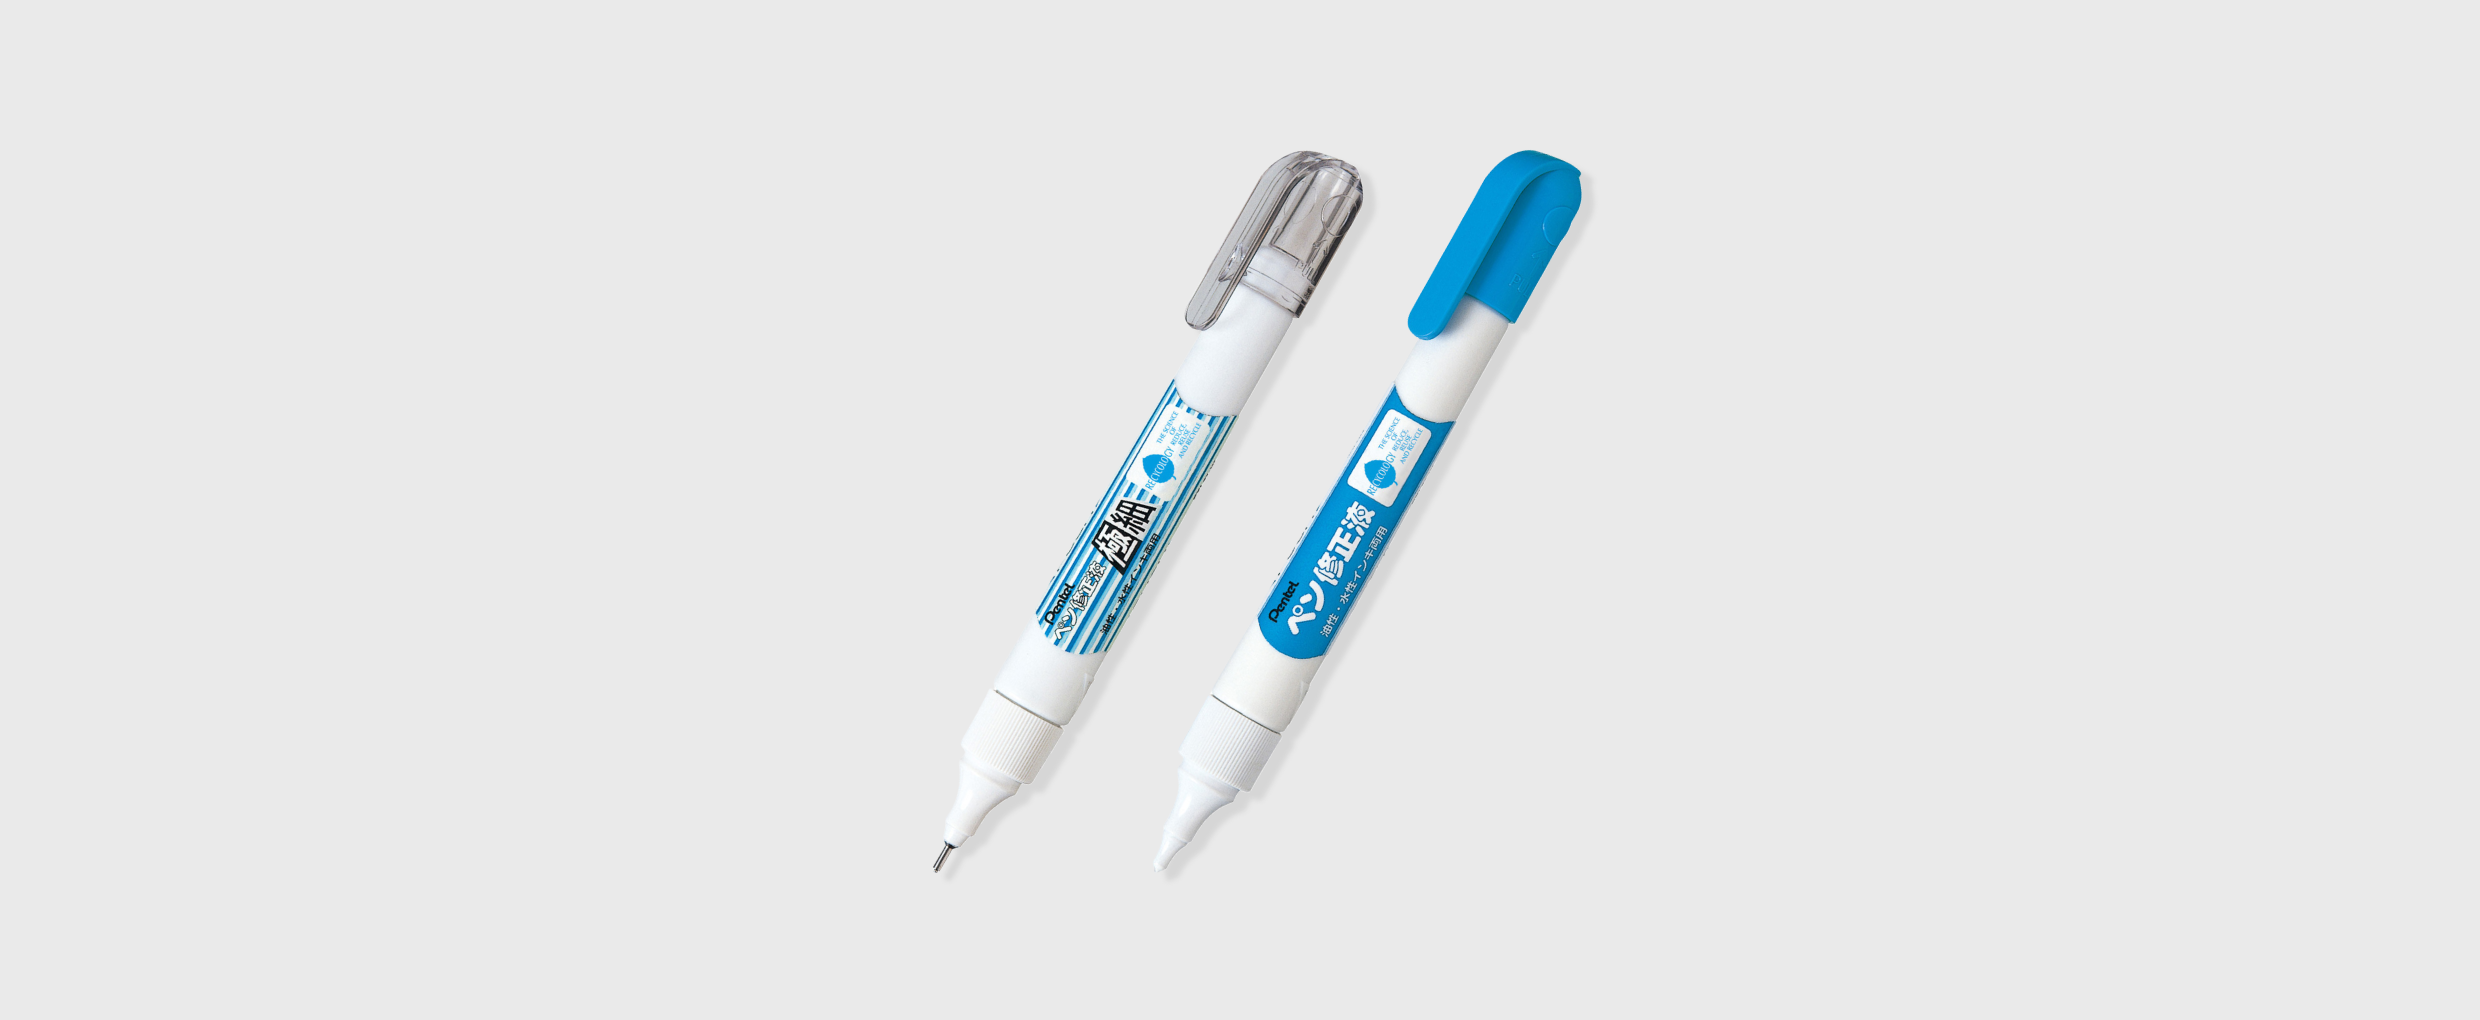 素晴らしい品質 ペンテル ペン修正液 XEZL21-W